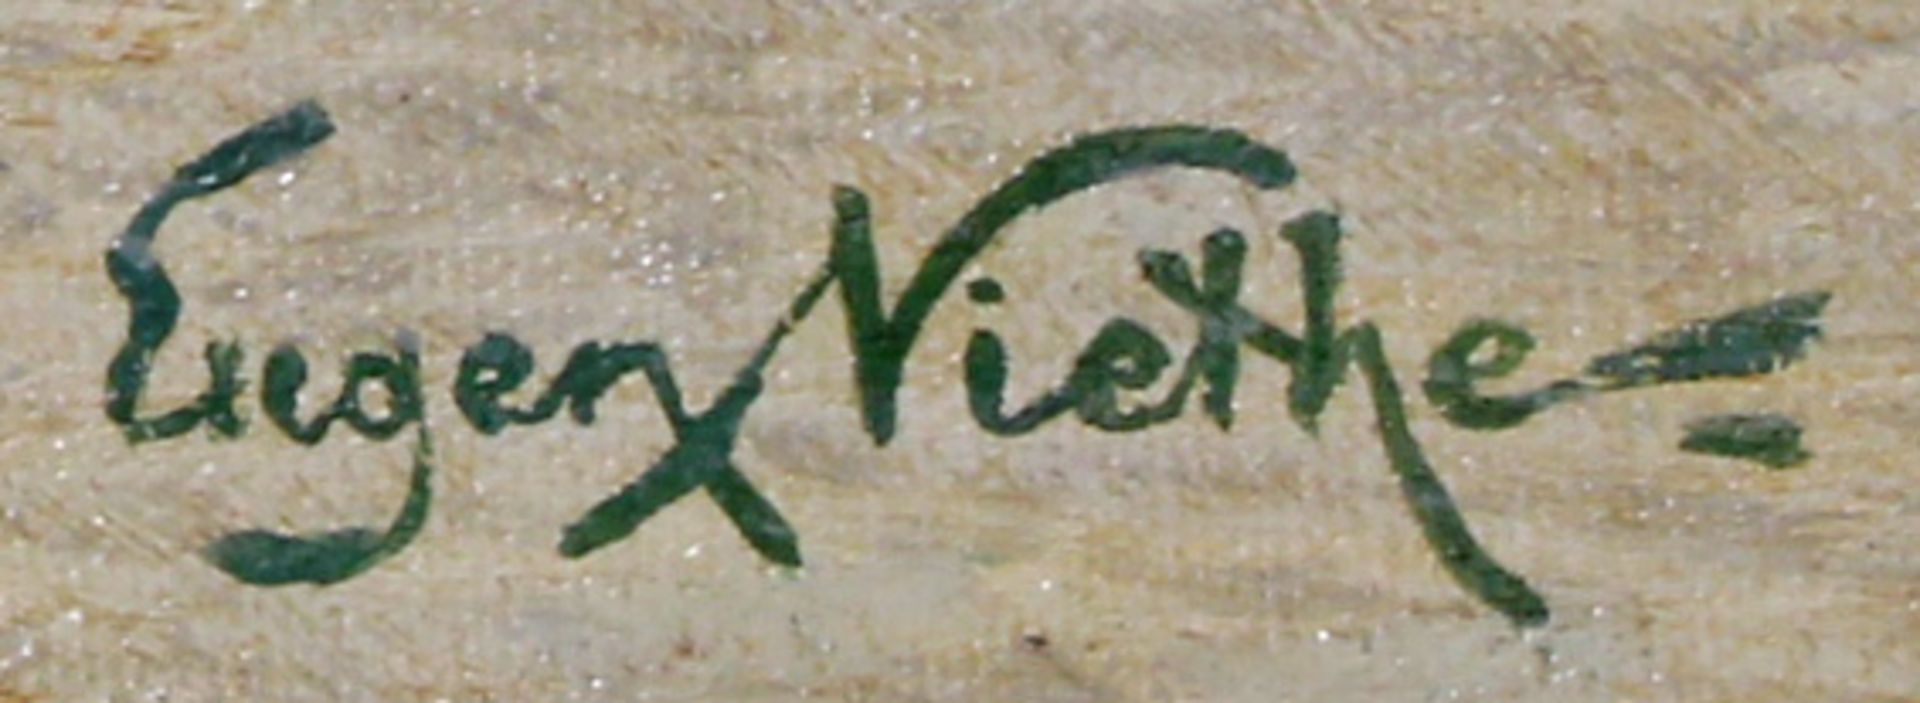 Niethe, Eugen (1. Hälfte 20. Jh.), "Segler vor Küste", Öl auf Leinwand, signiert unten rechts - Image 3 of 4